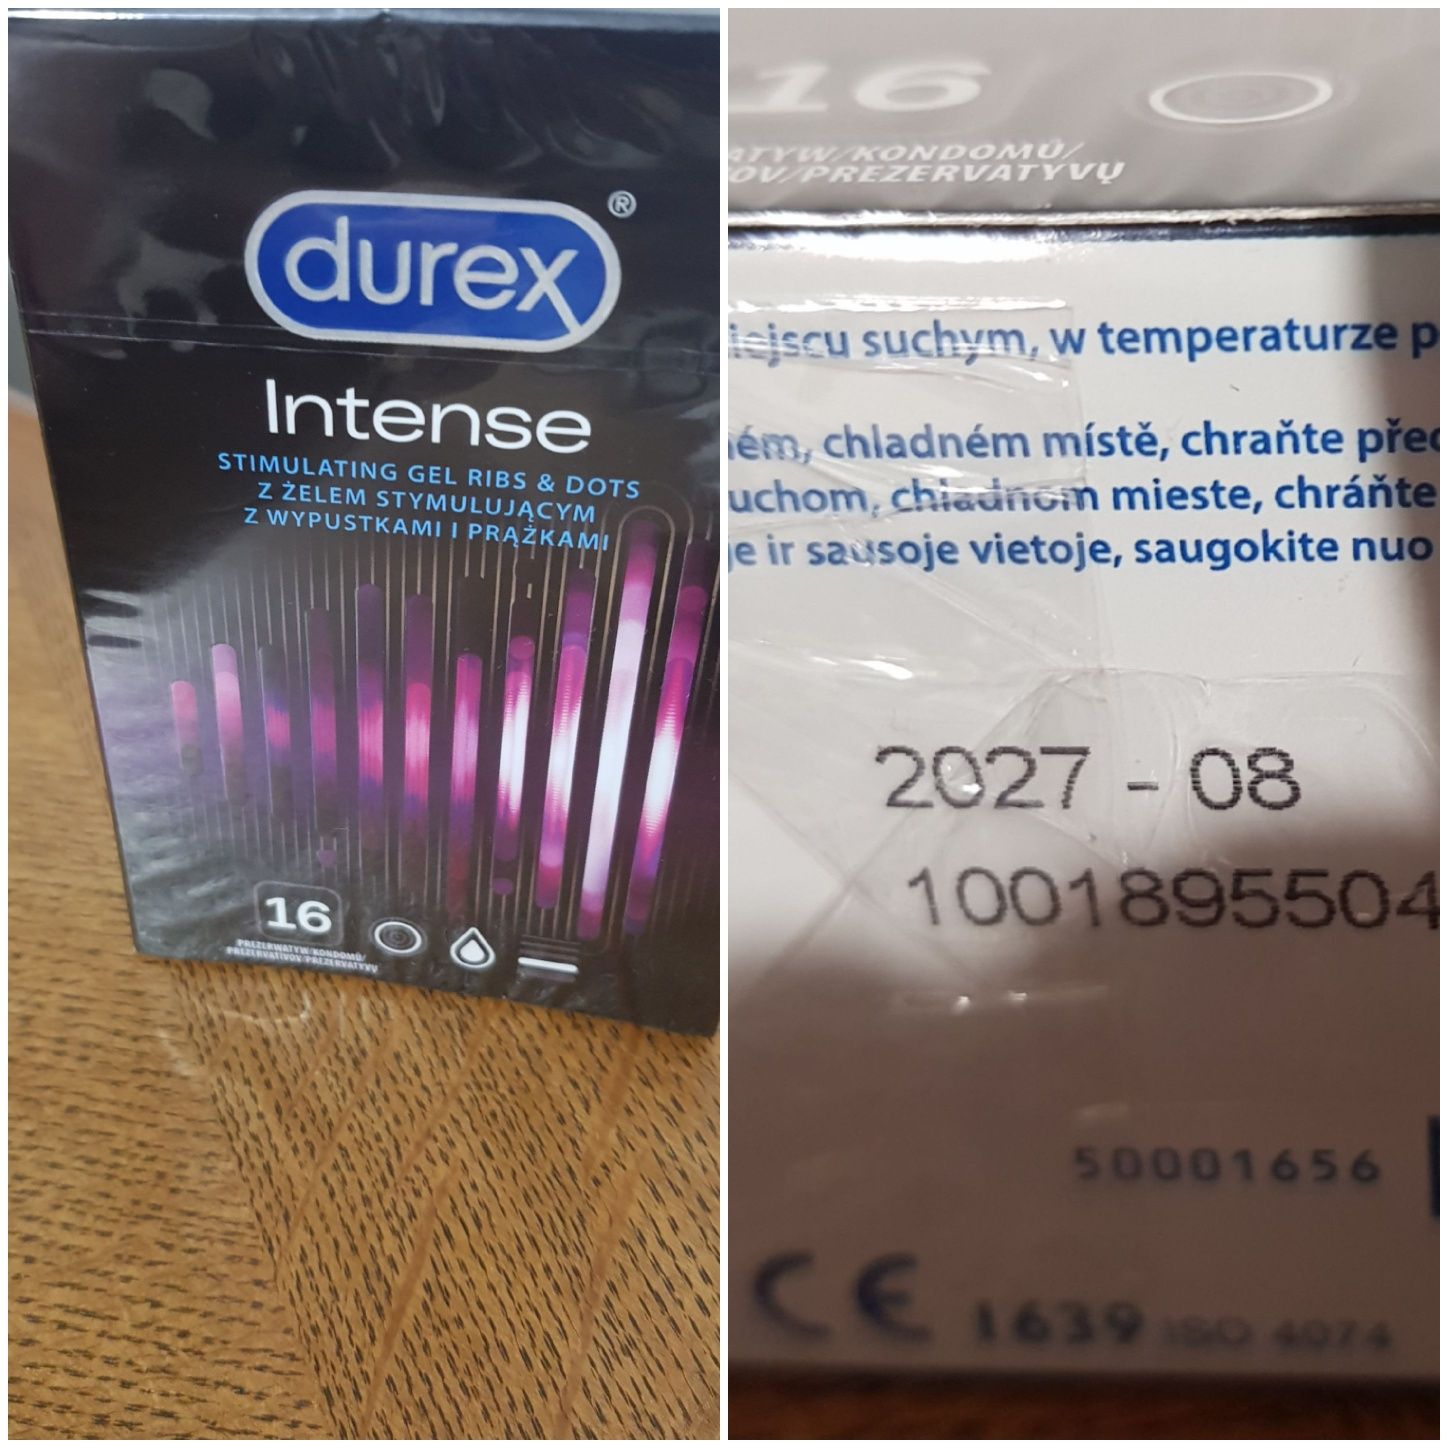 Durex Intense z żelem stymulującym z wypustkami i prążkami 16 szt